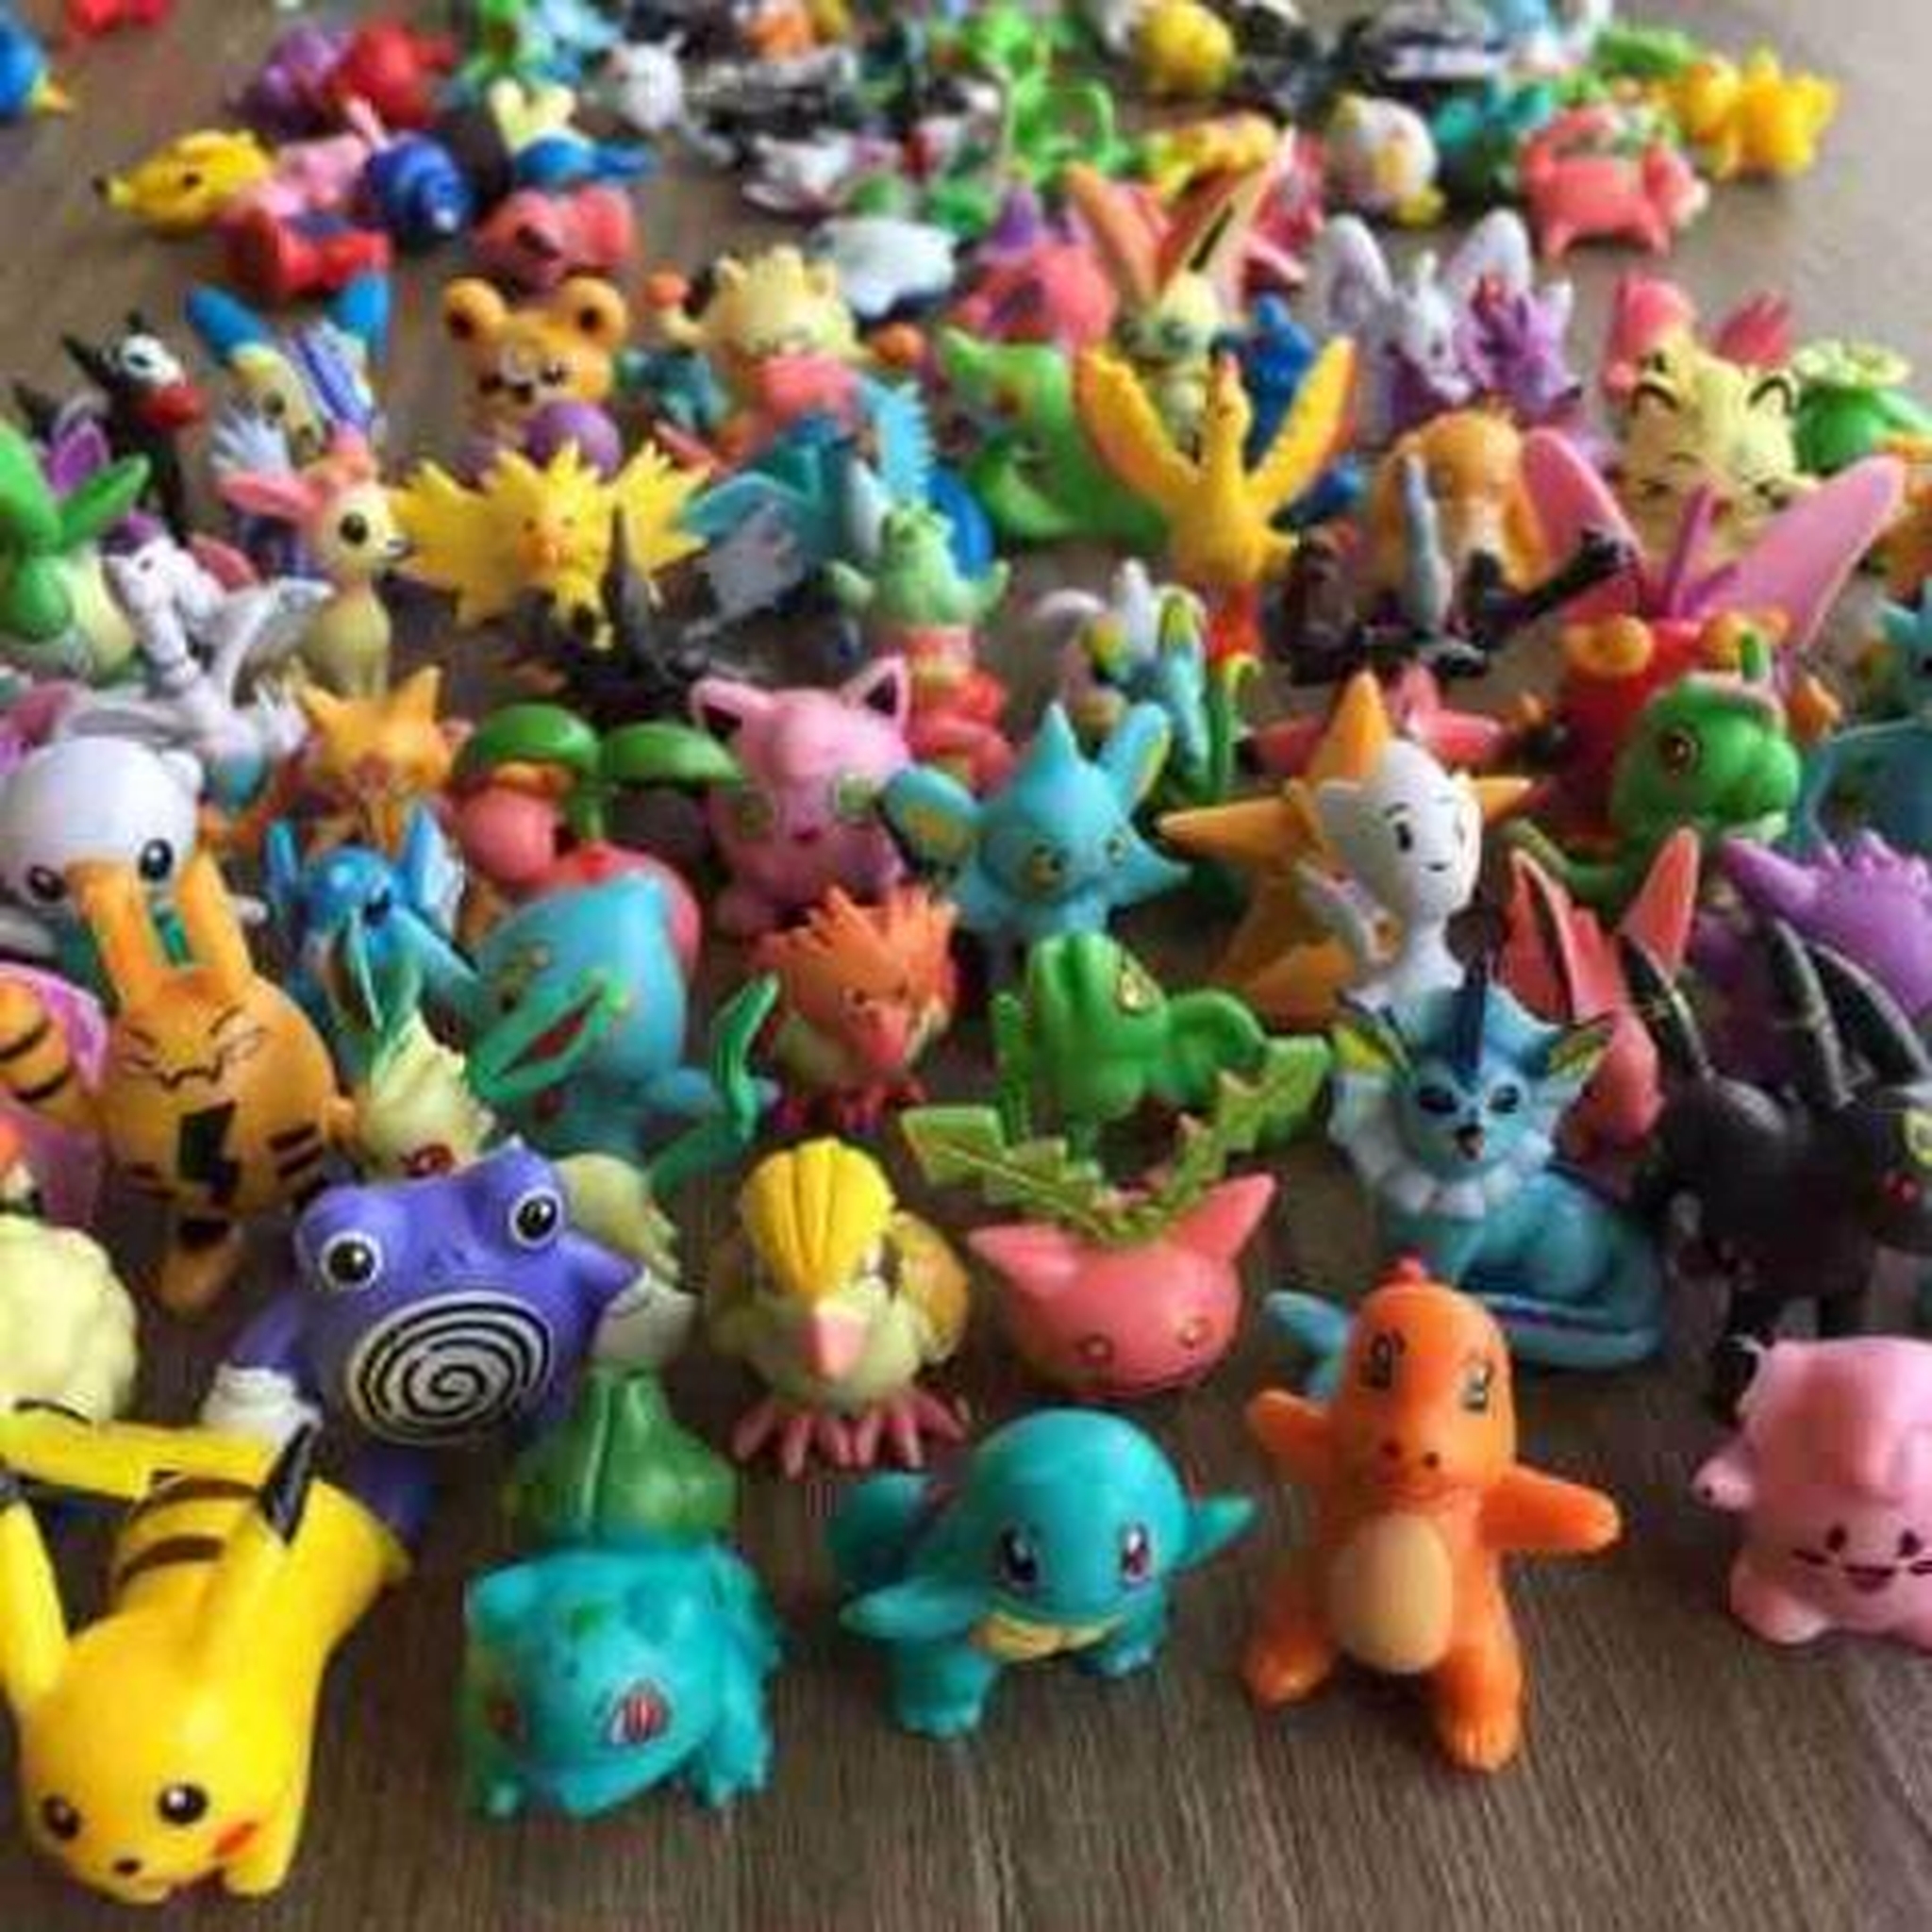 100 Bonecos Pokémon GO - Importados da China - Super Coleção